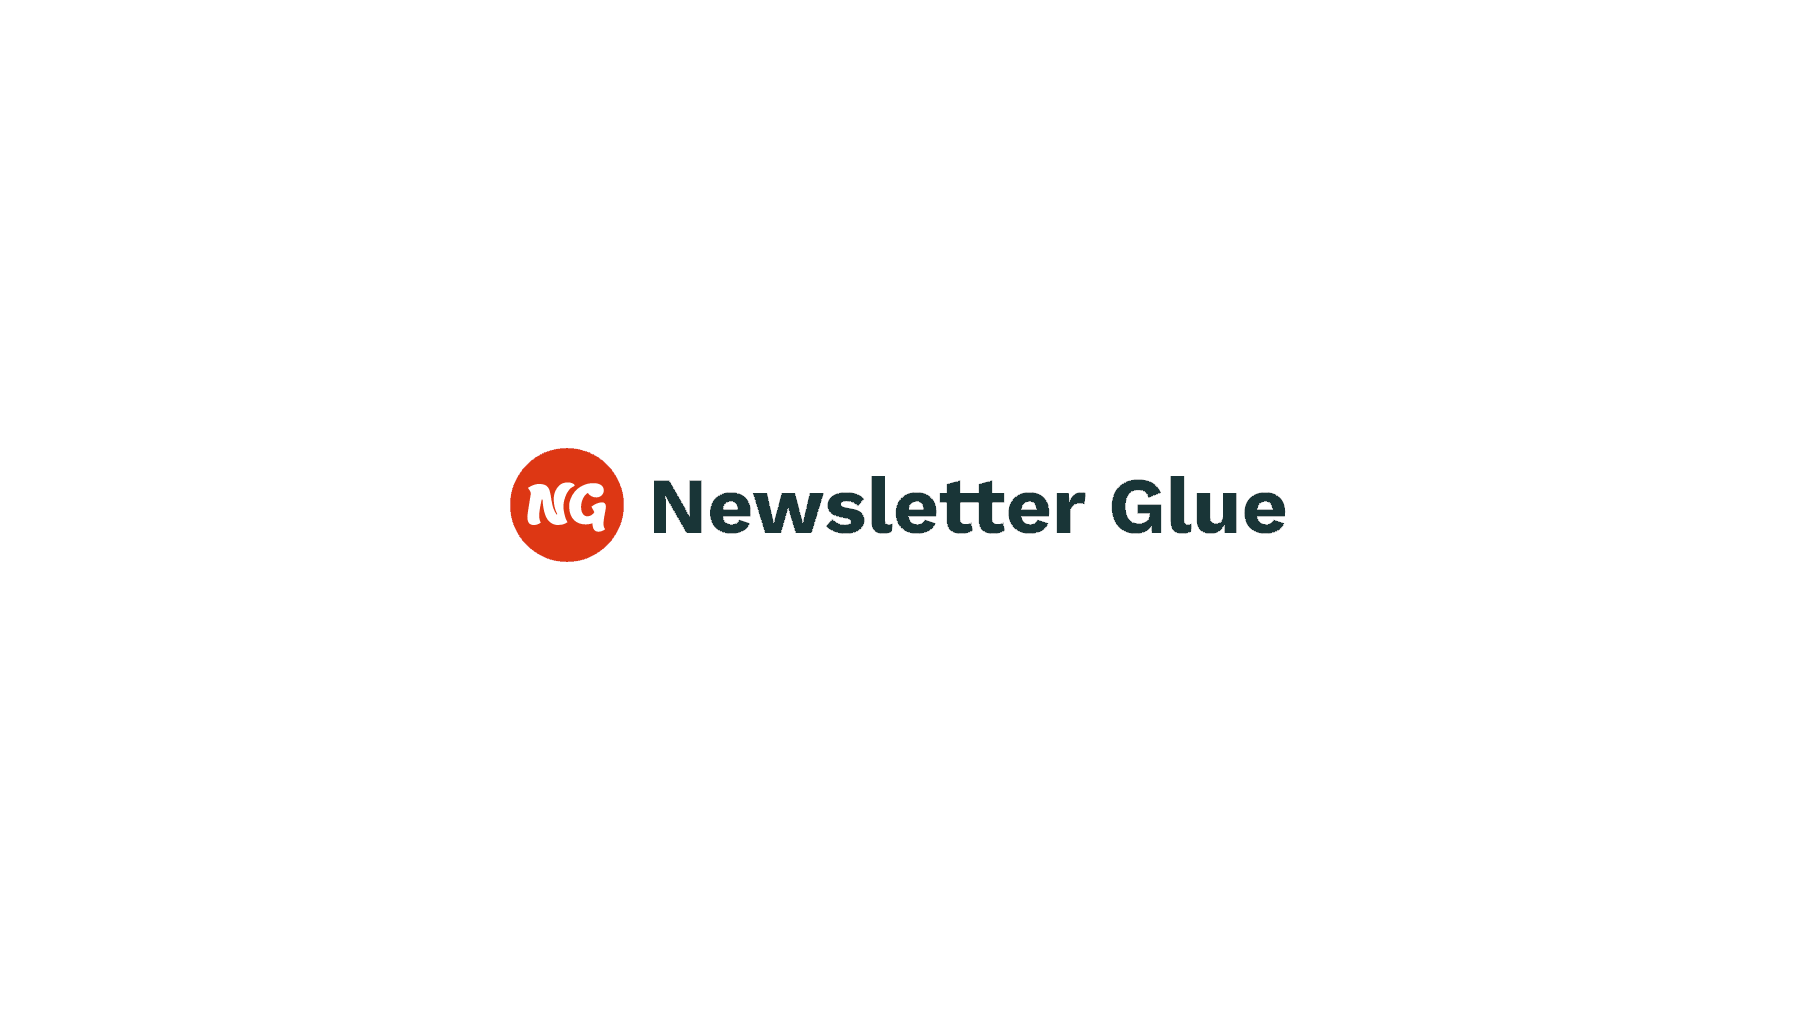 Newsletter Glue Version 2 ricostruisce l'interfaccia delle impostazioni con componenti a blocchi, pone le basi per nuove funzionalità: WP Tavern